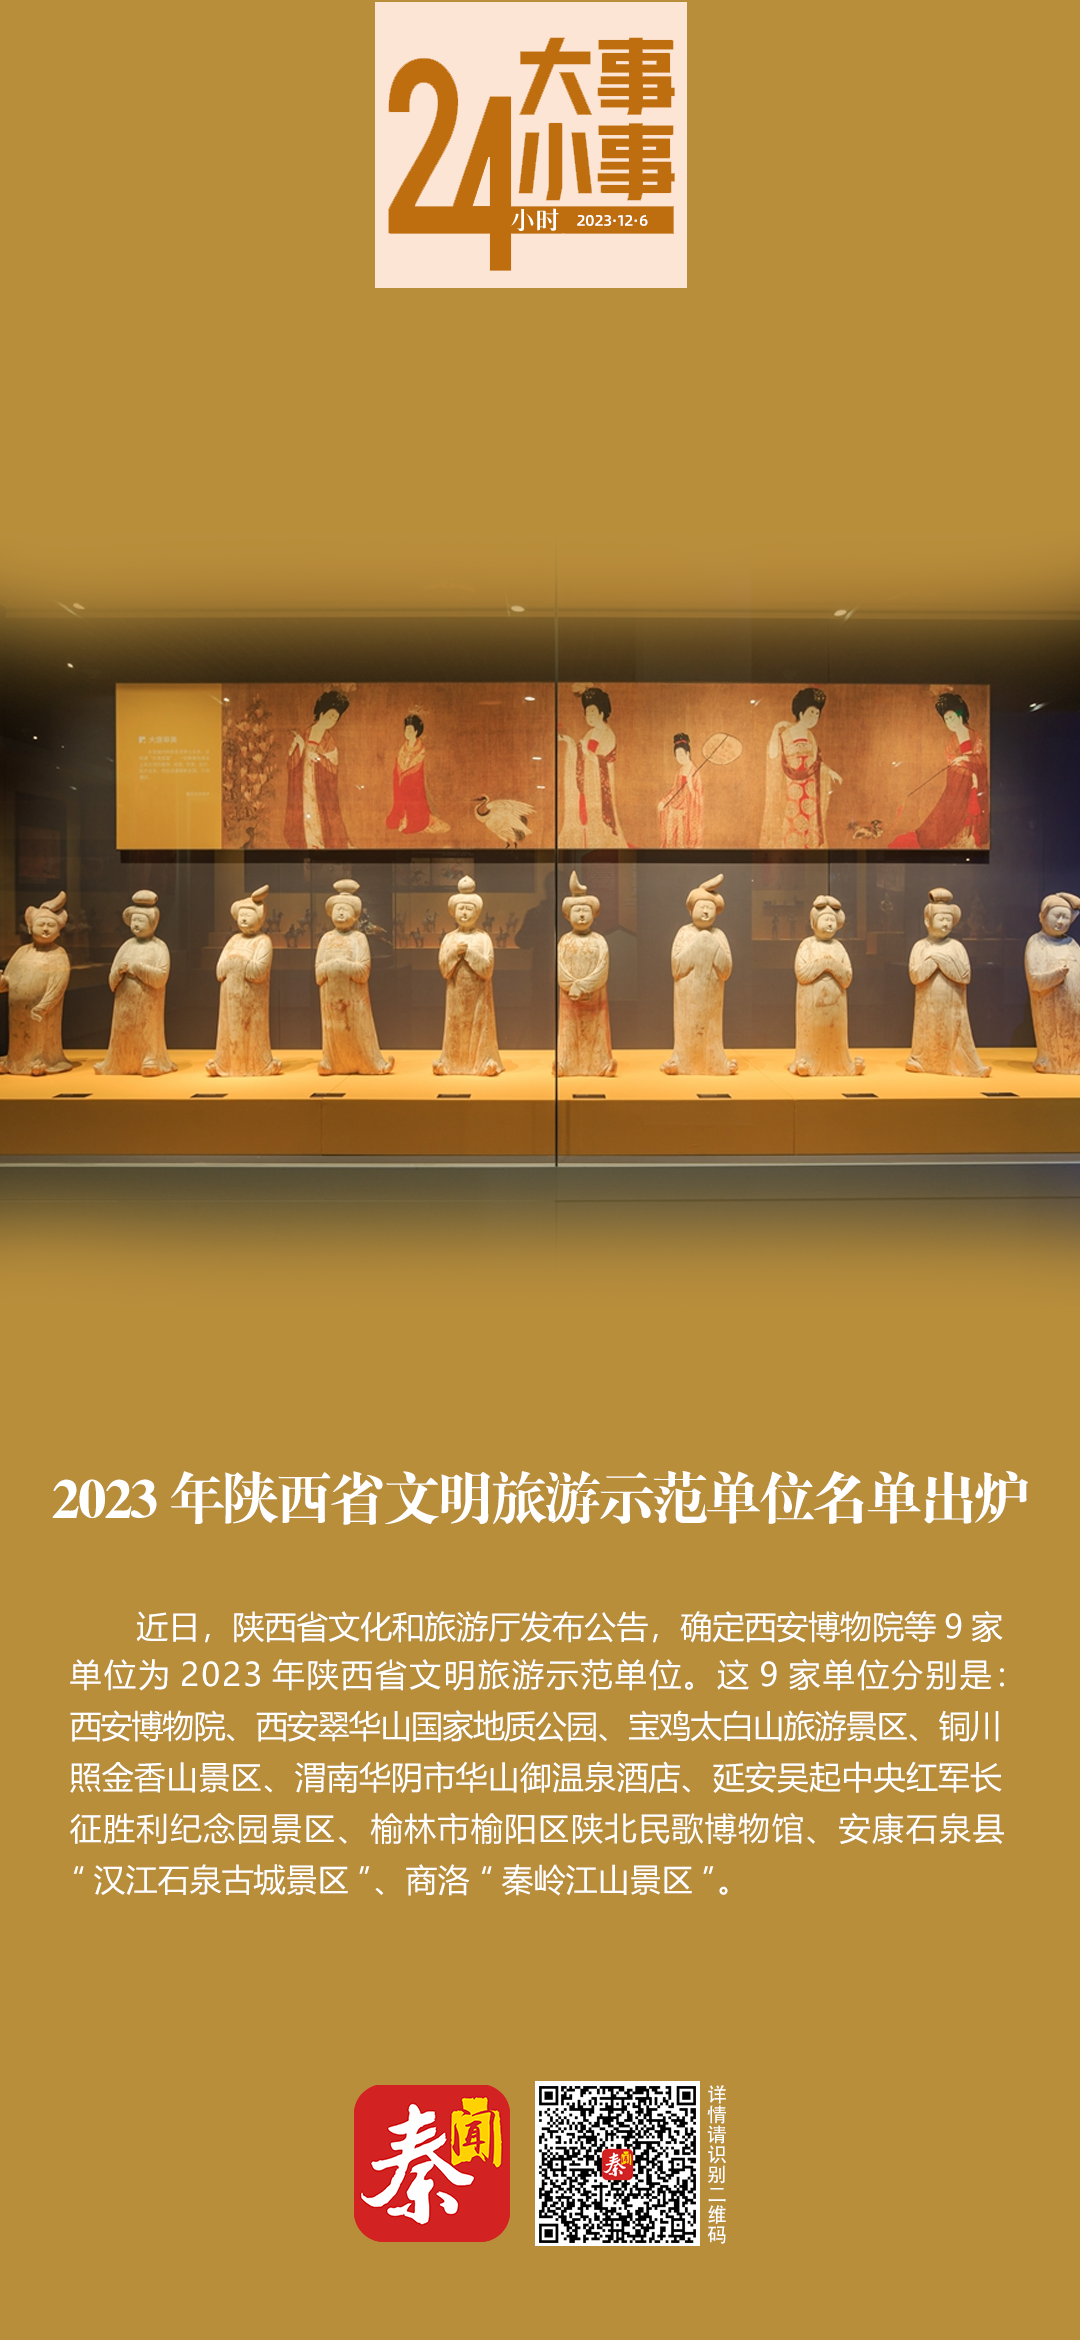 【24小时大事小事】2023年陕西省文明旅游示范单位名单出炉